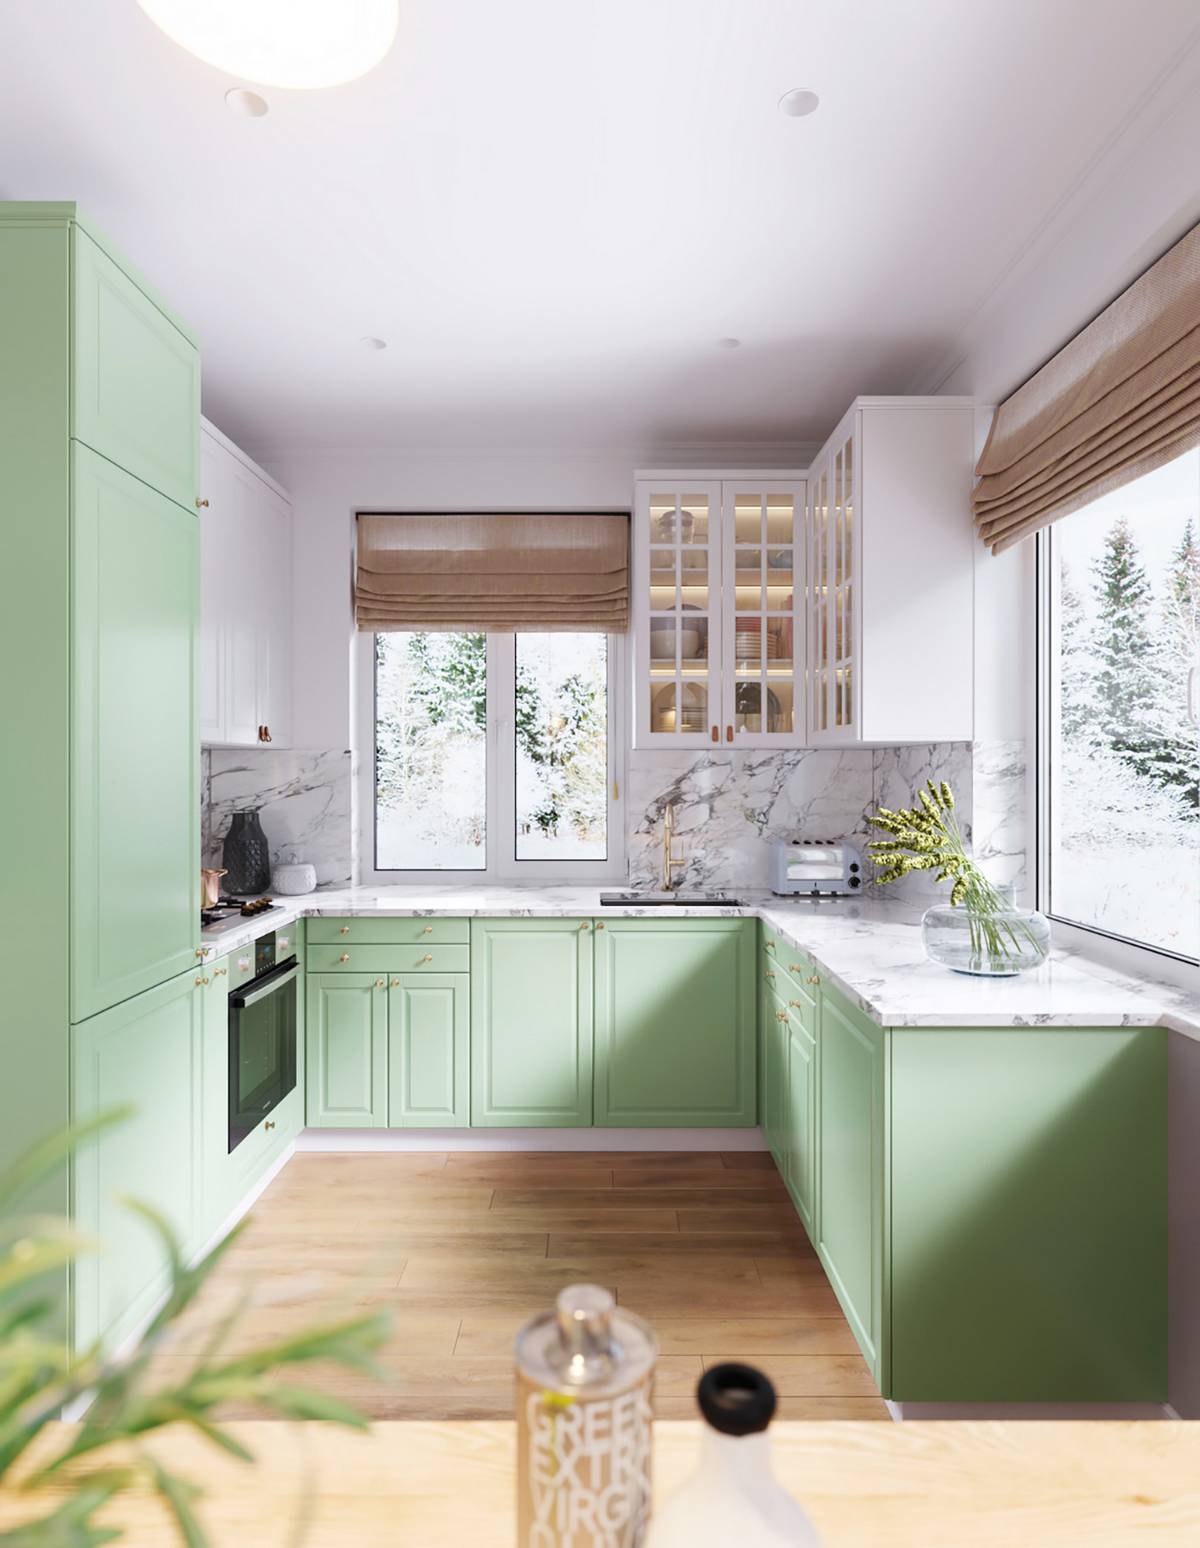 Hệ tủ bếp màu xanh bạc hà kết hợp mặt bàn ốp đá cẩm thạch sang trọng mang đến cái nhìn tươi mát, dễ chịu, xóa tan đi cảm giác nóng bức trong khu vực nấu nướng.